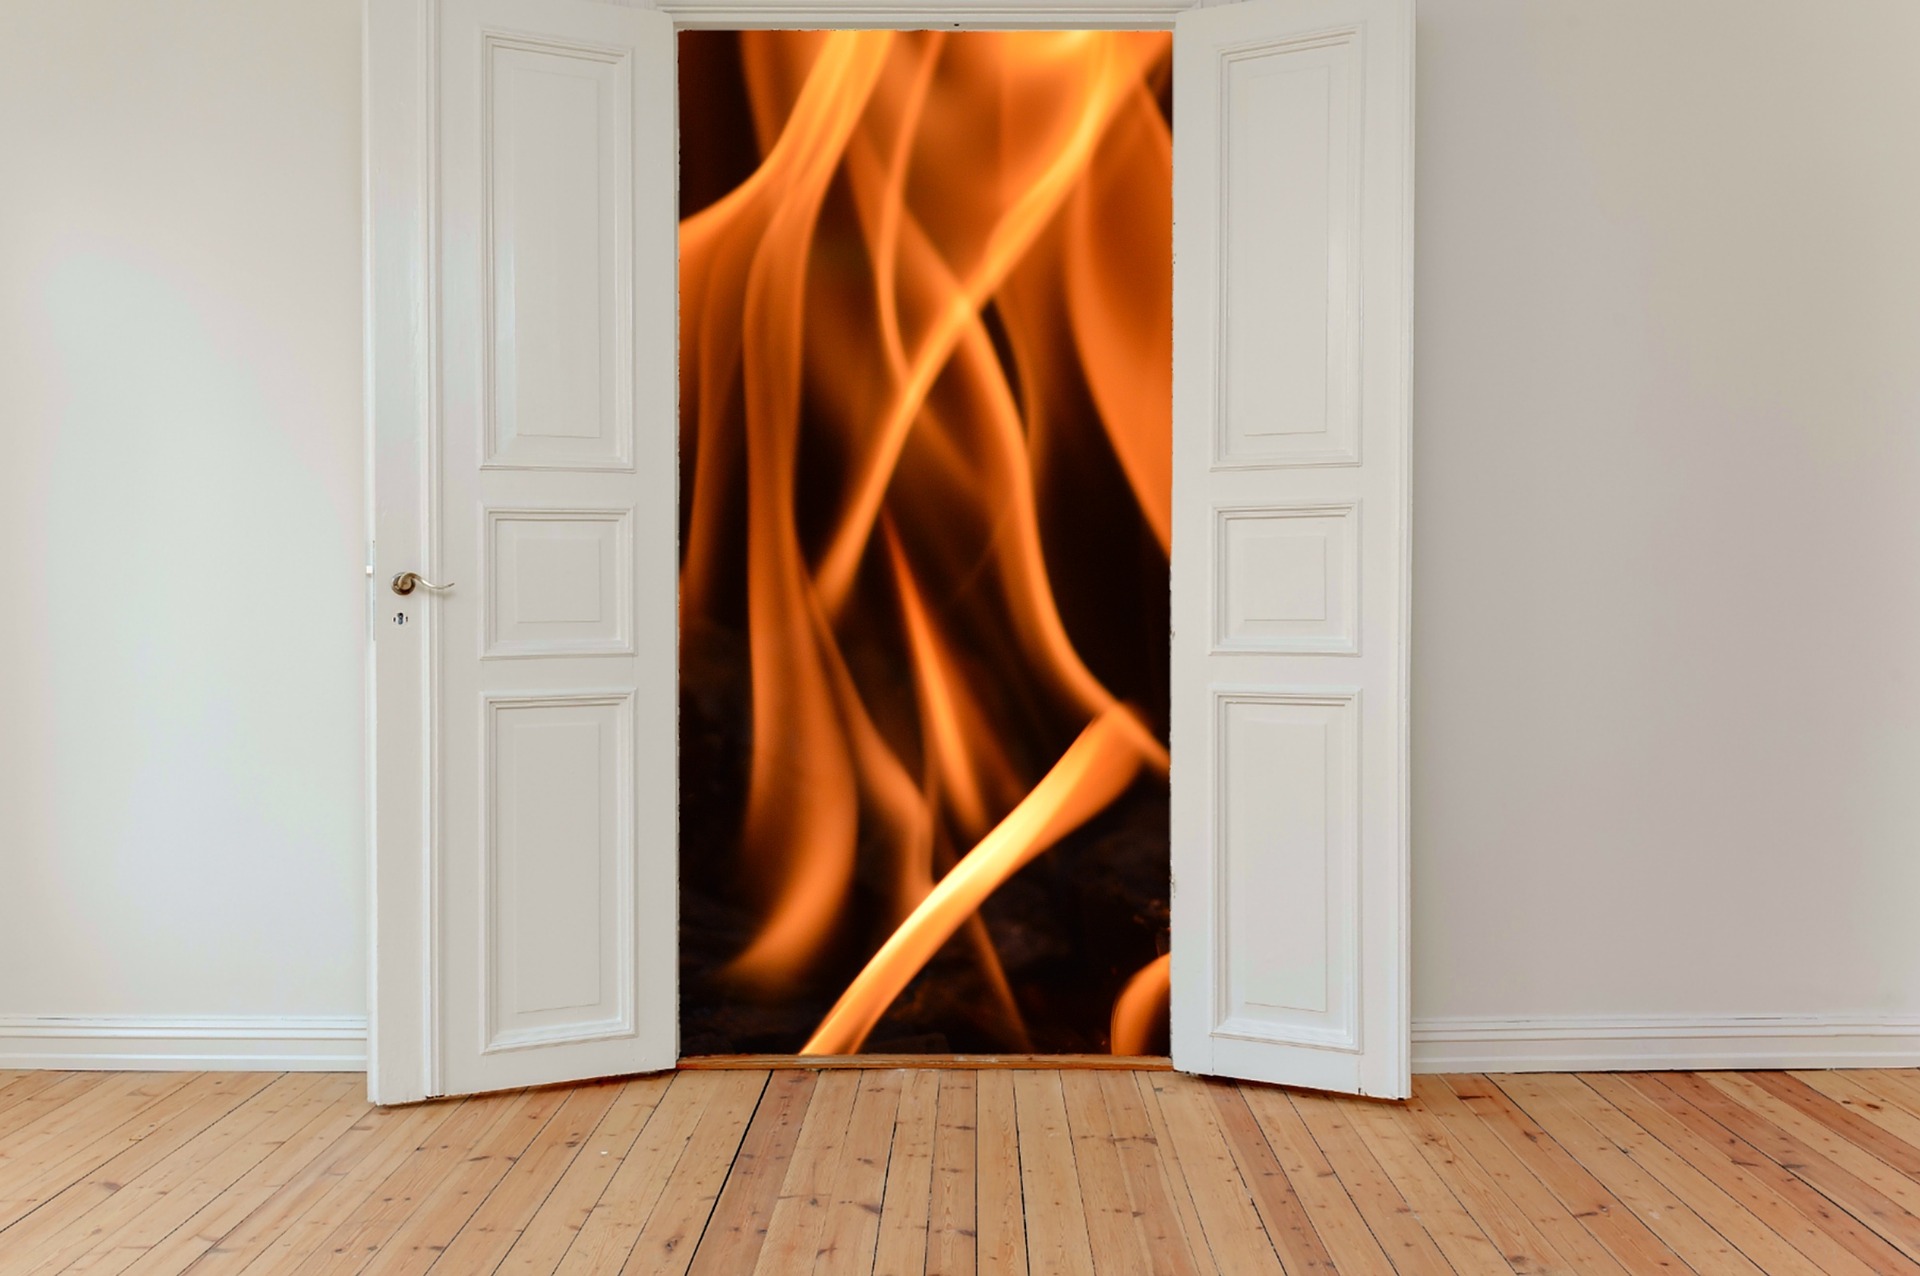 https://pixabay.com/photos/hinged-doors-door-entrance-old-door-2759495/